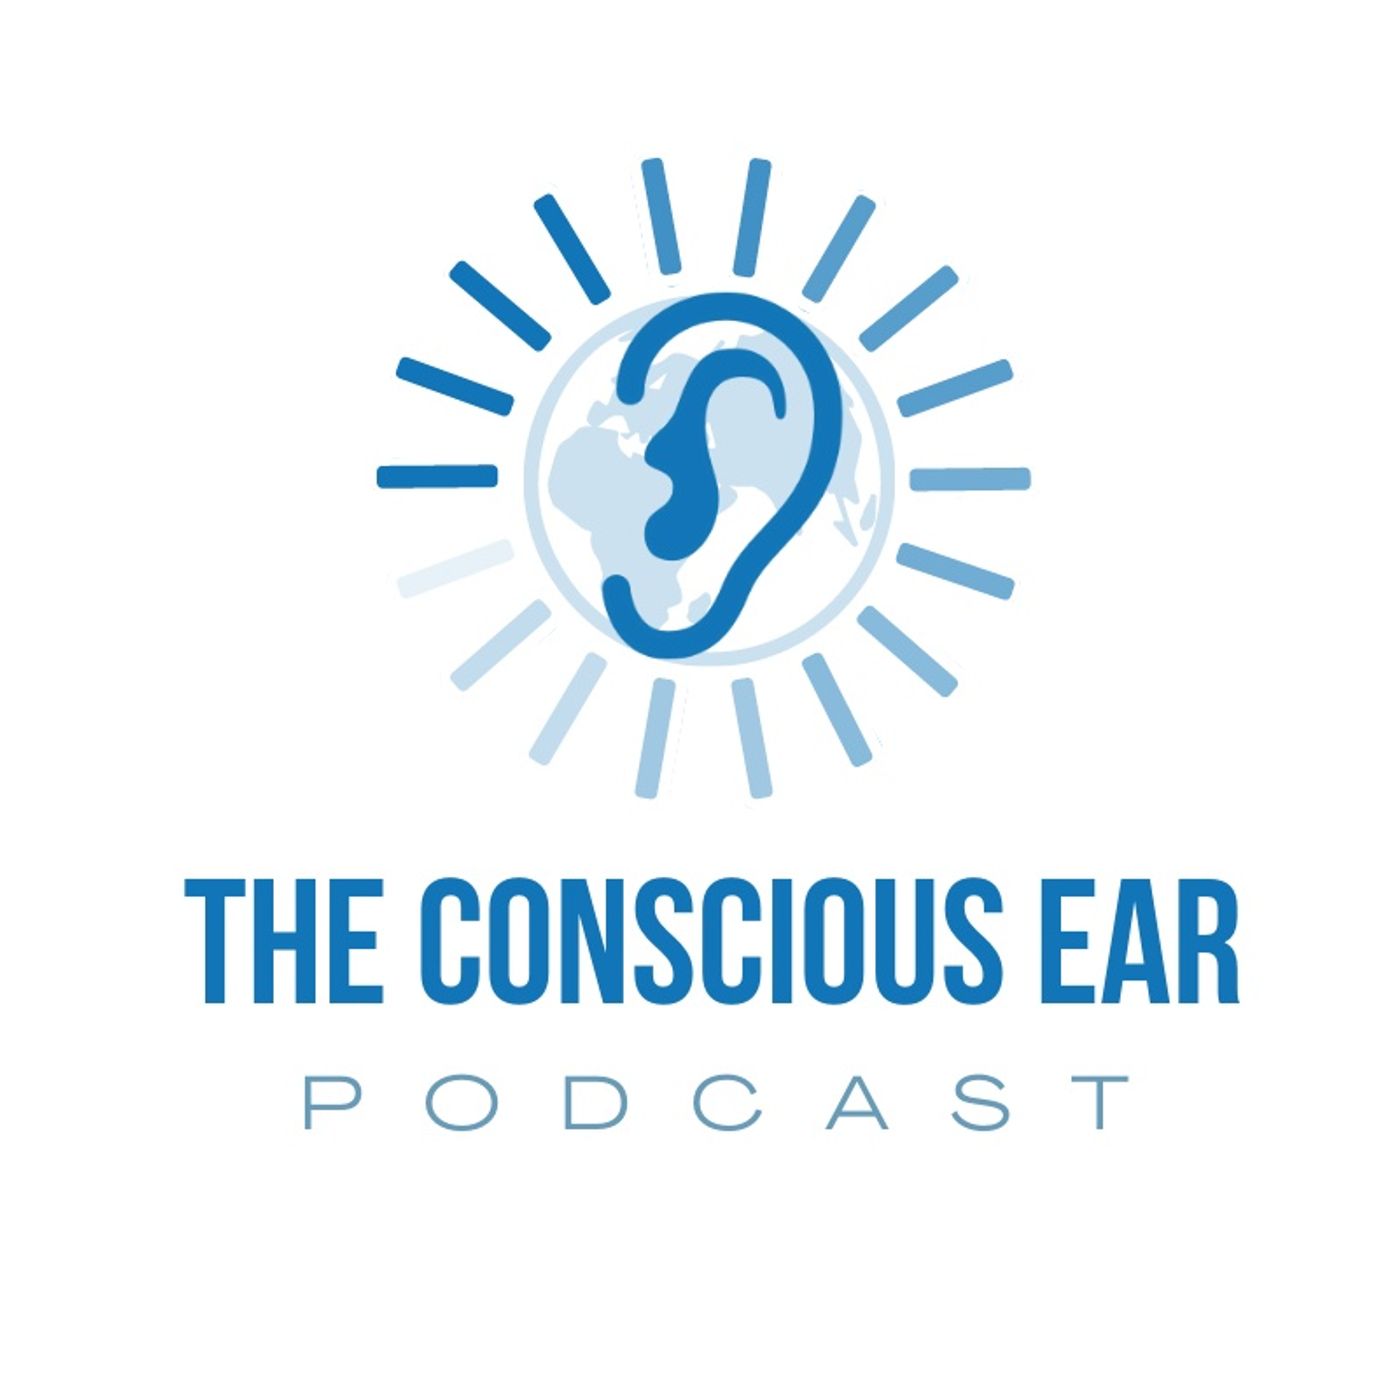 The Conscious Ear Podcast